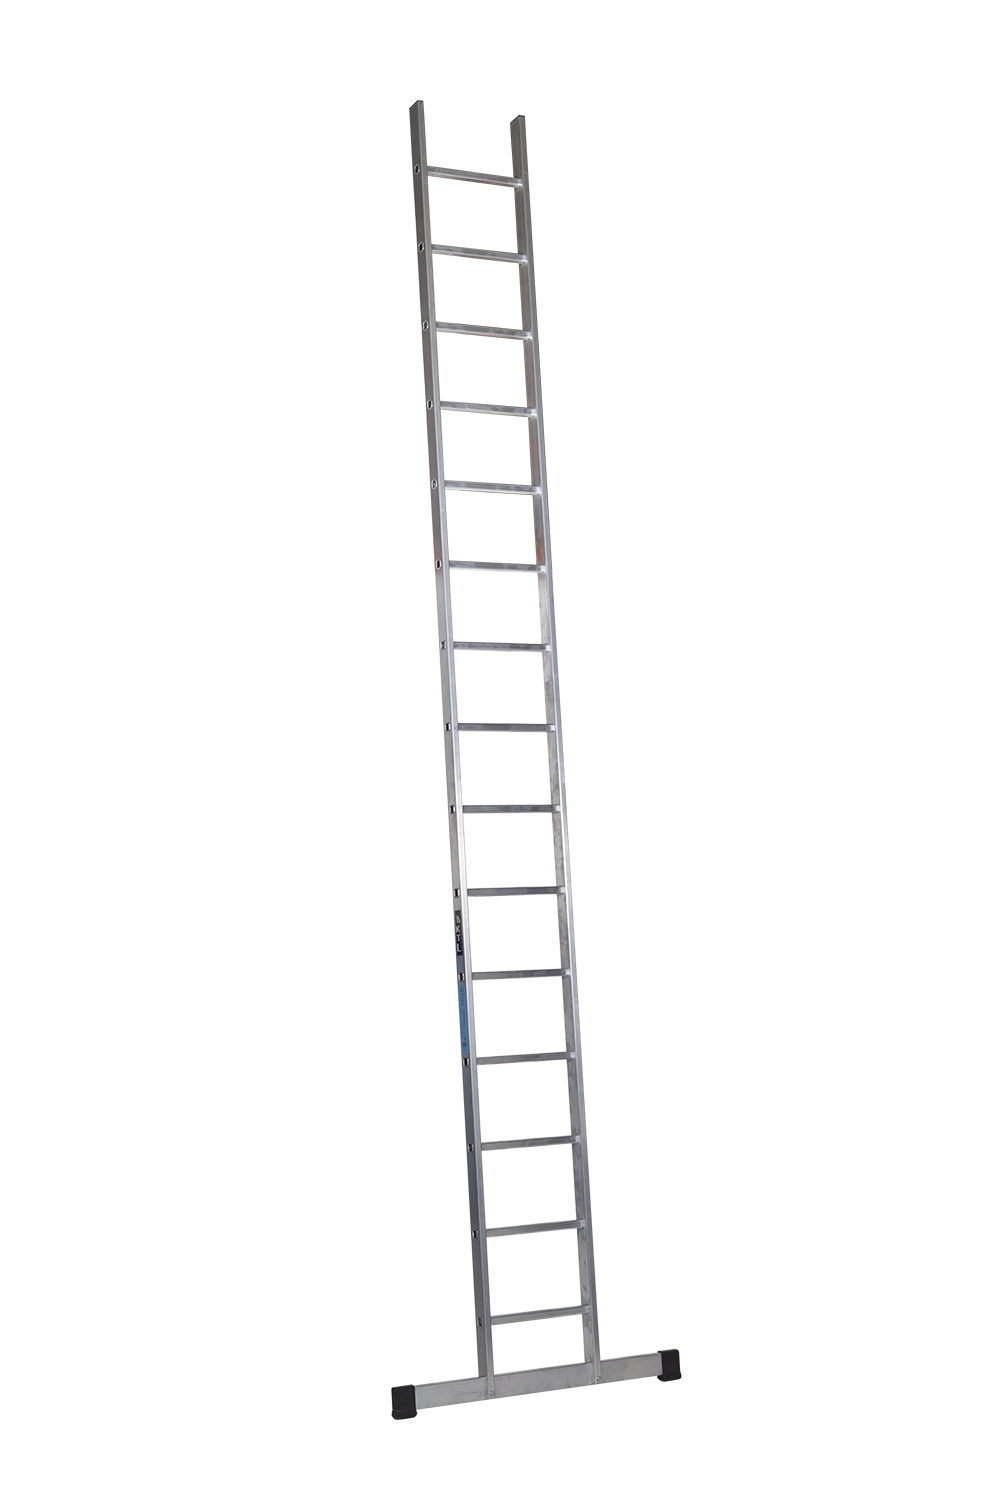 Escada Fixa de Alumínio - 11 Degraus